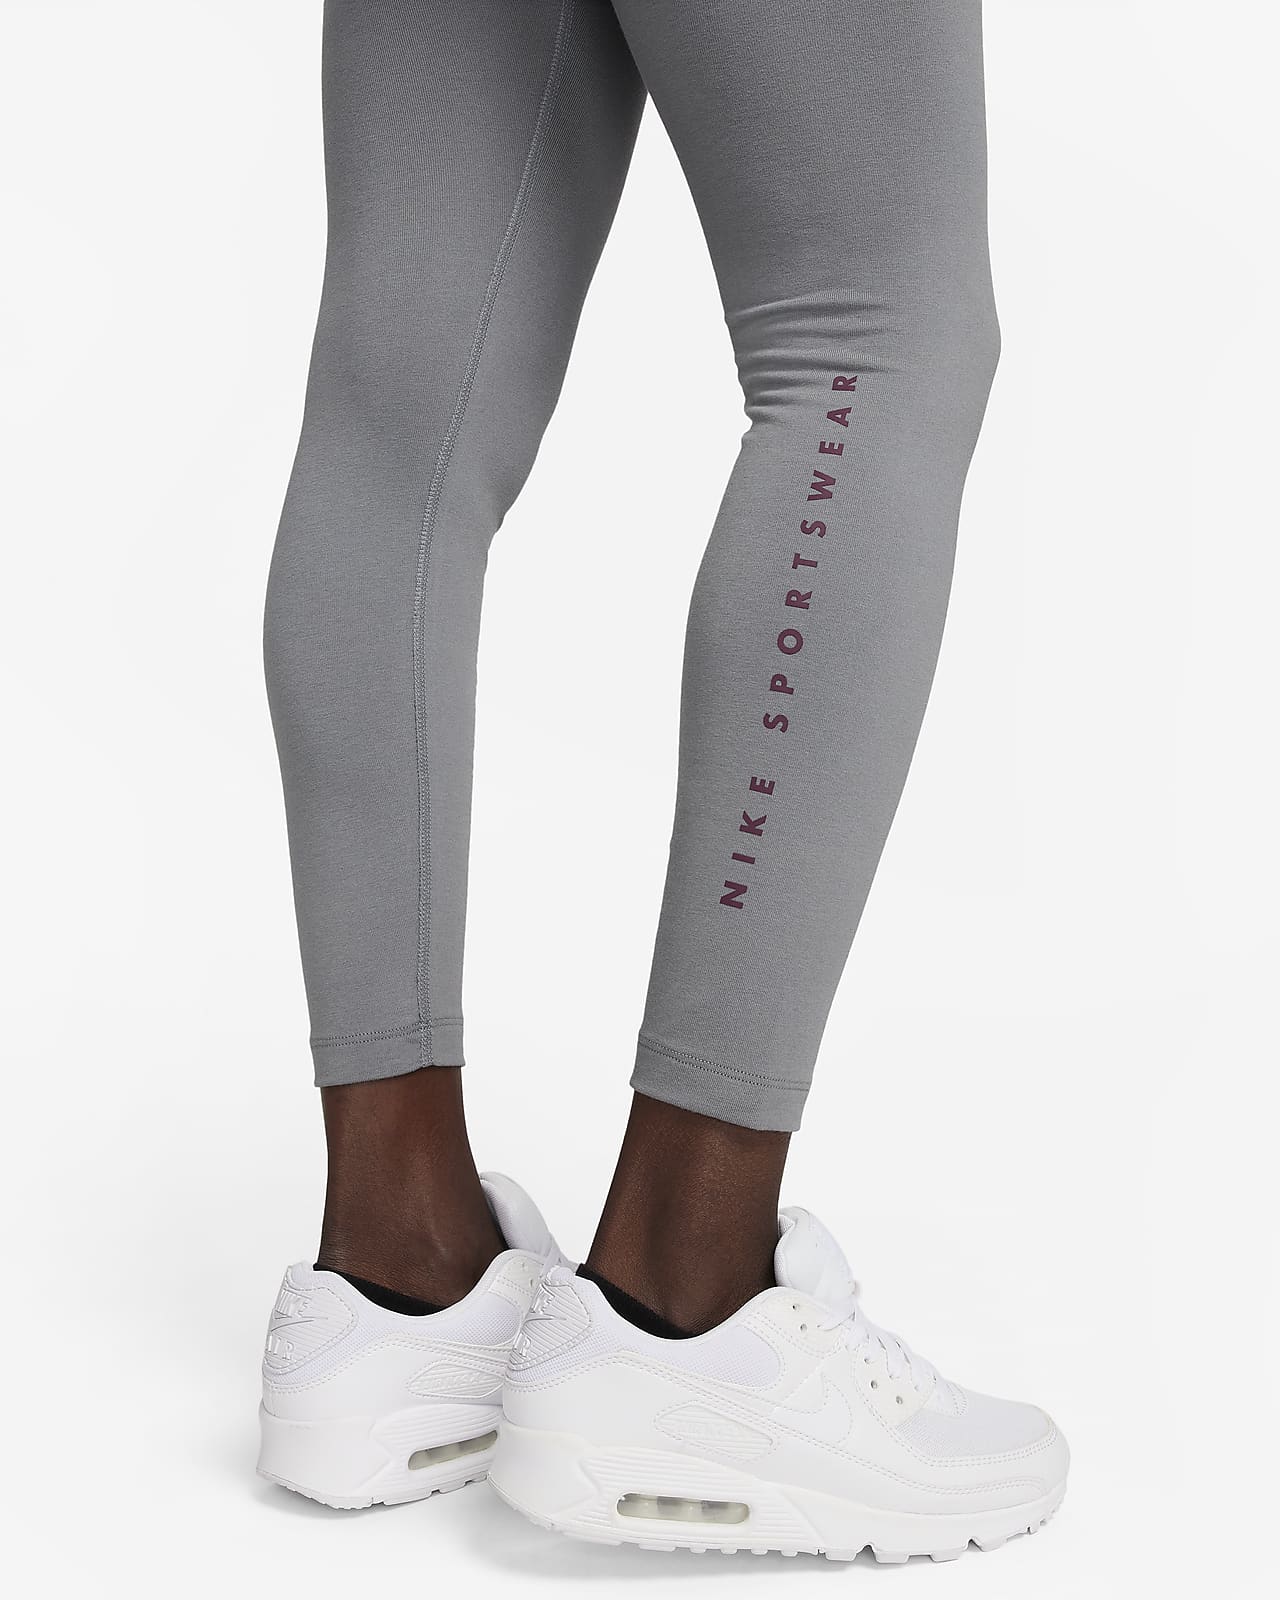 Nike Sportswear Women's High-Waisted Full-Length Graphic Leggings